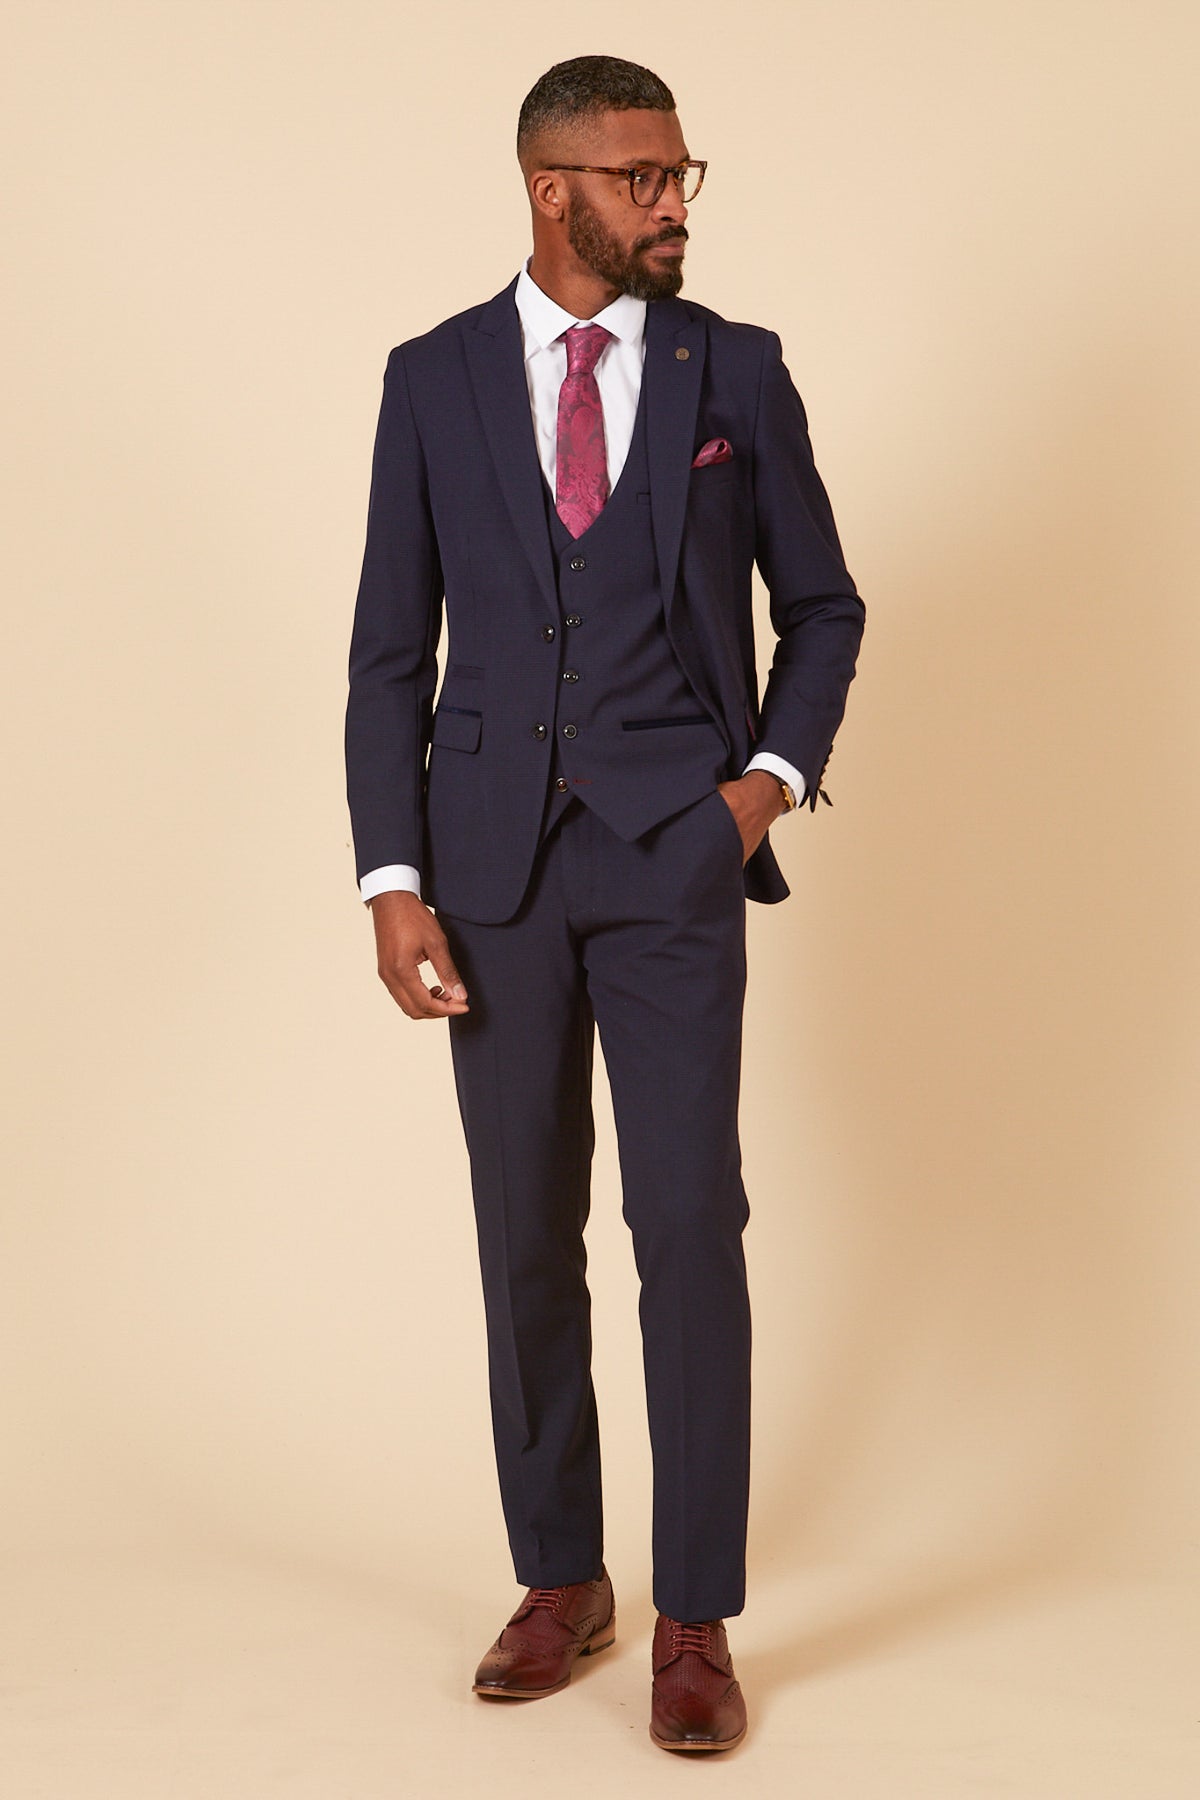 Men's Vest Fashion | Formal Suit For Wedding | Giorgenti Custom Suits Long  Island | Blue suit men, Navy blue suit men, Designer suits for men